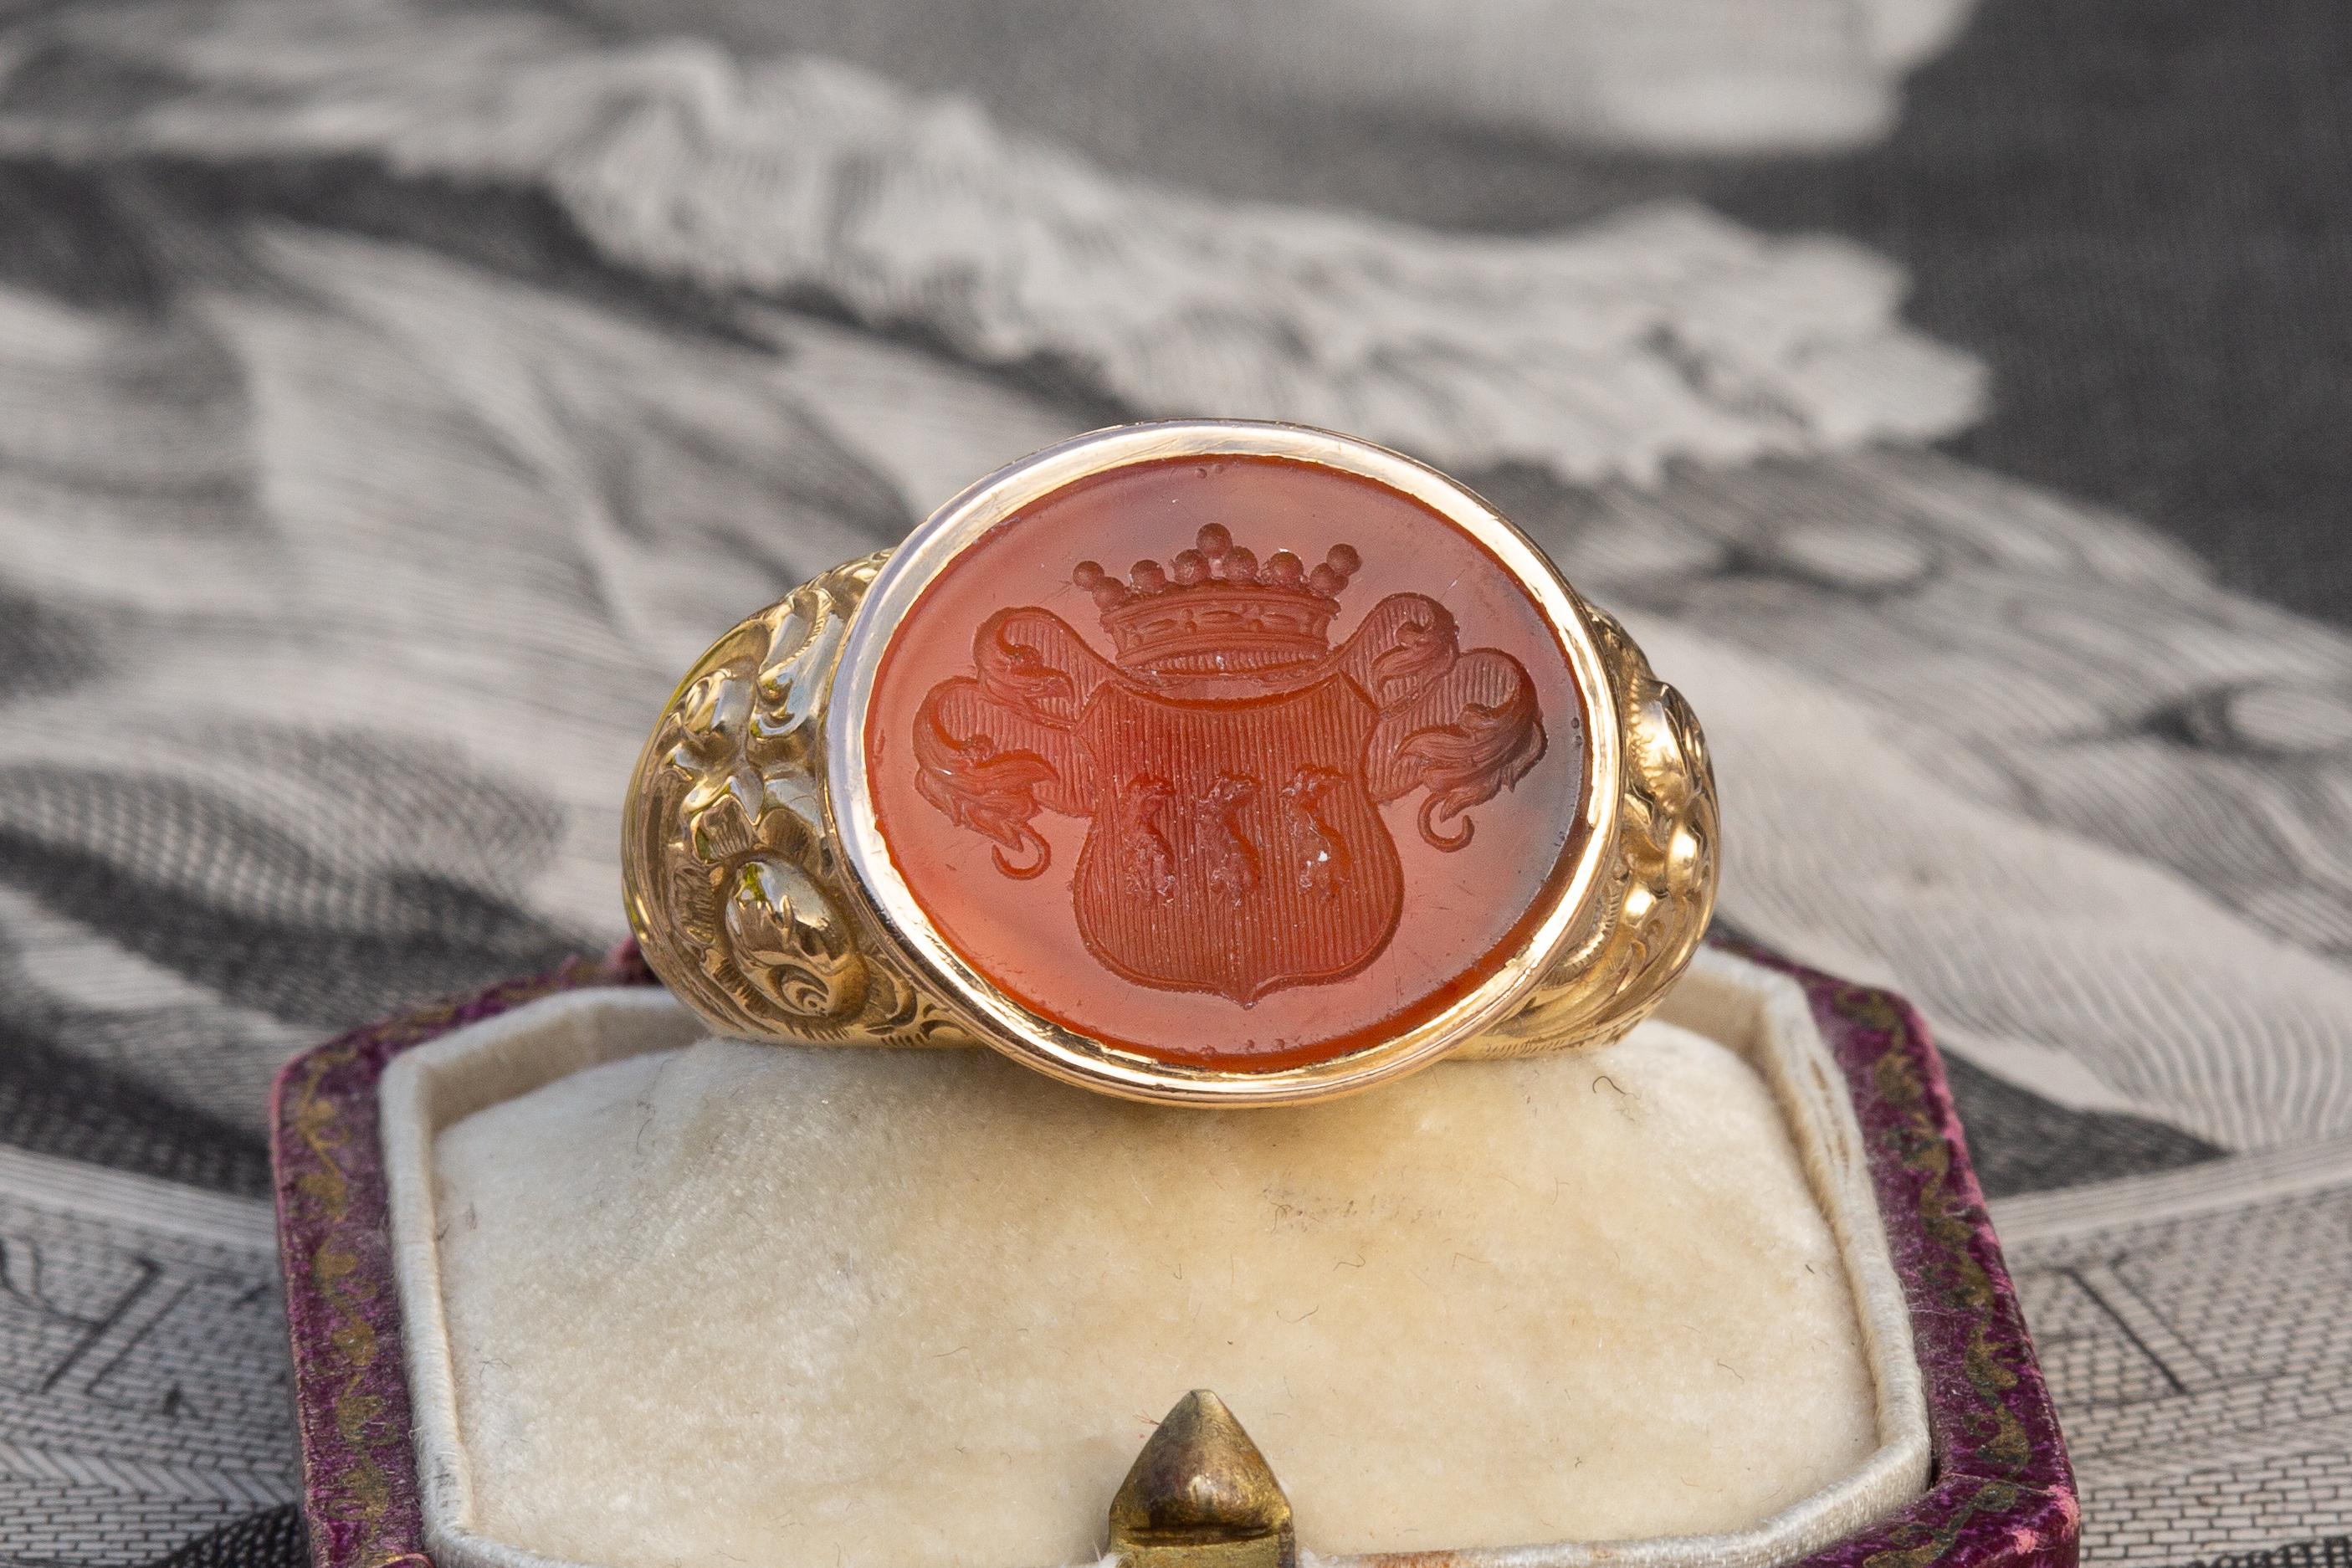 Superbe et rare bague finlandaise ancienne en or 18 carats, fabriquée à Helsinki en 1854. L'intaille ovale des armoiries en cornaline est sertie dans une grande monture en or repoussé aux motifs feuillagés et complexes. Grâce à un jeu complet de